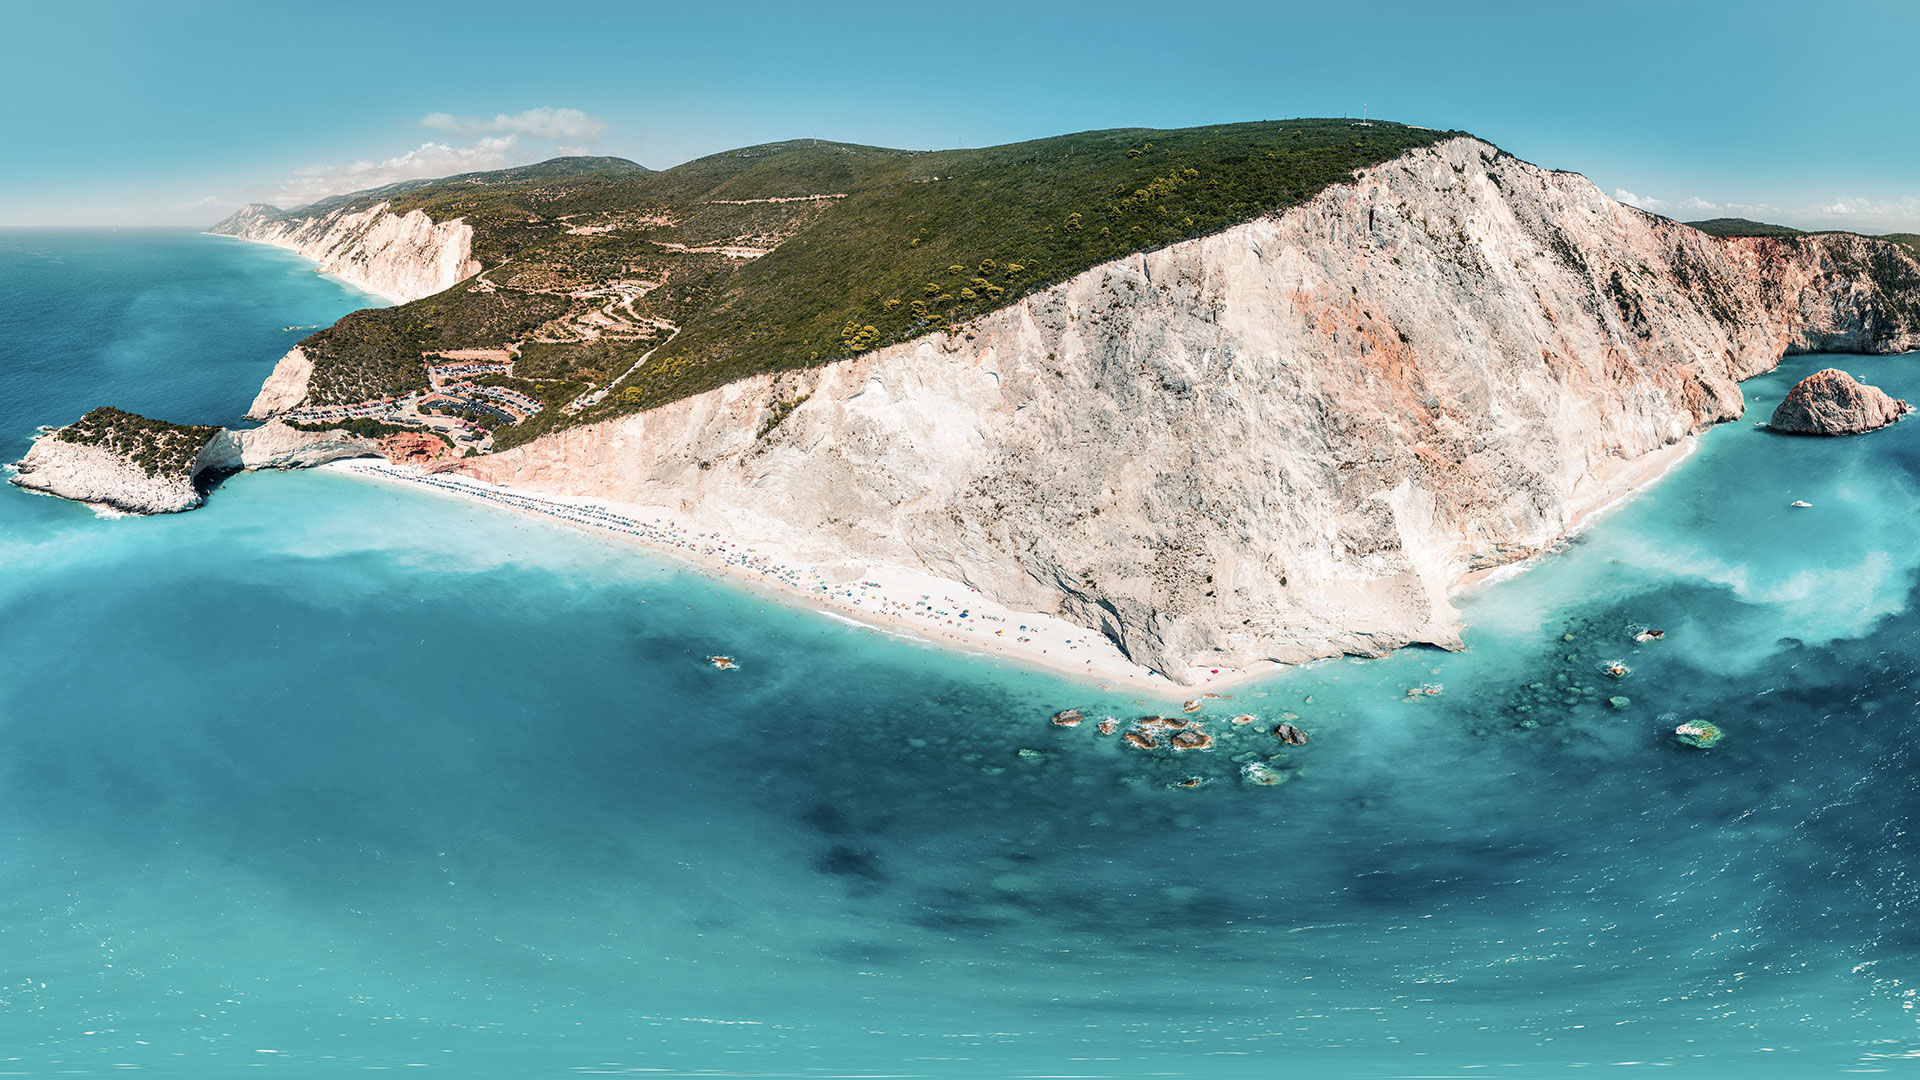 Αυτές είναι οι καλύτερες παραλίες της Λευκάδας με κρυστάλλινα γαλαζοπράσινα νερά και ατελείωτες αμμουδιές